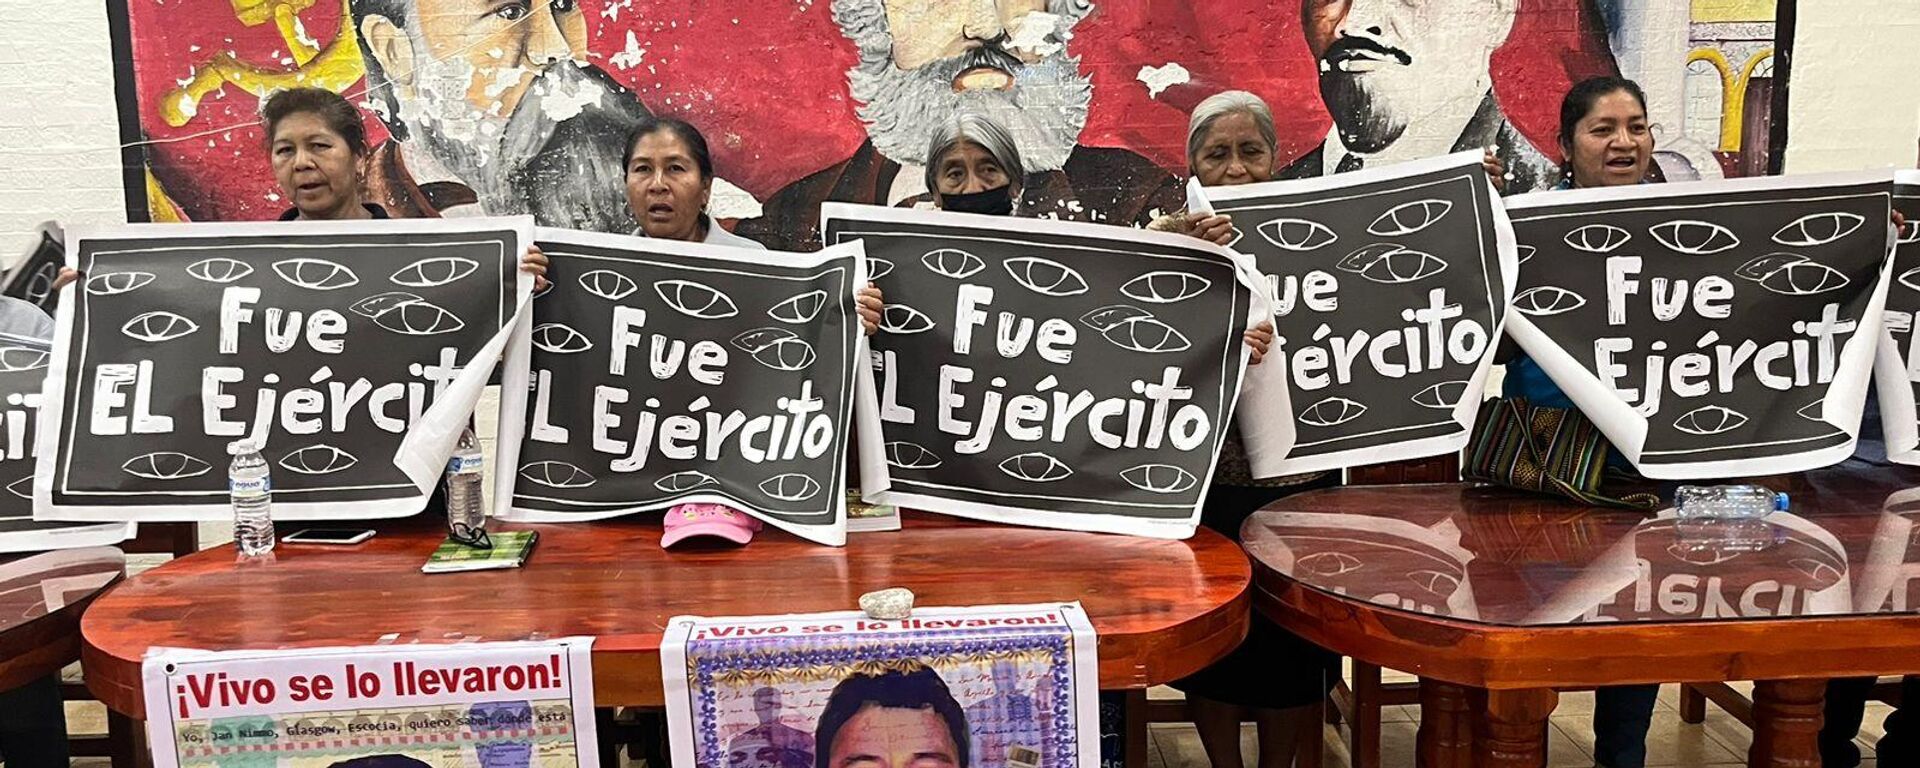 Familiares de los 43 normalistas desaparecidos de Ayotzinapa han alzado la voz desde que se perpetró el ataque en 2014 - Sputnik Mundo, 1920, 23.03.2023